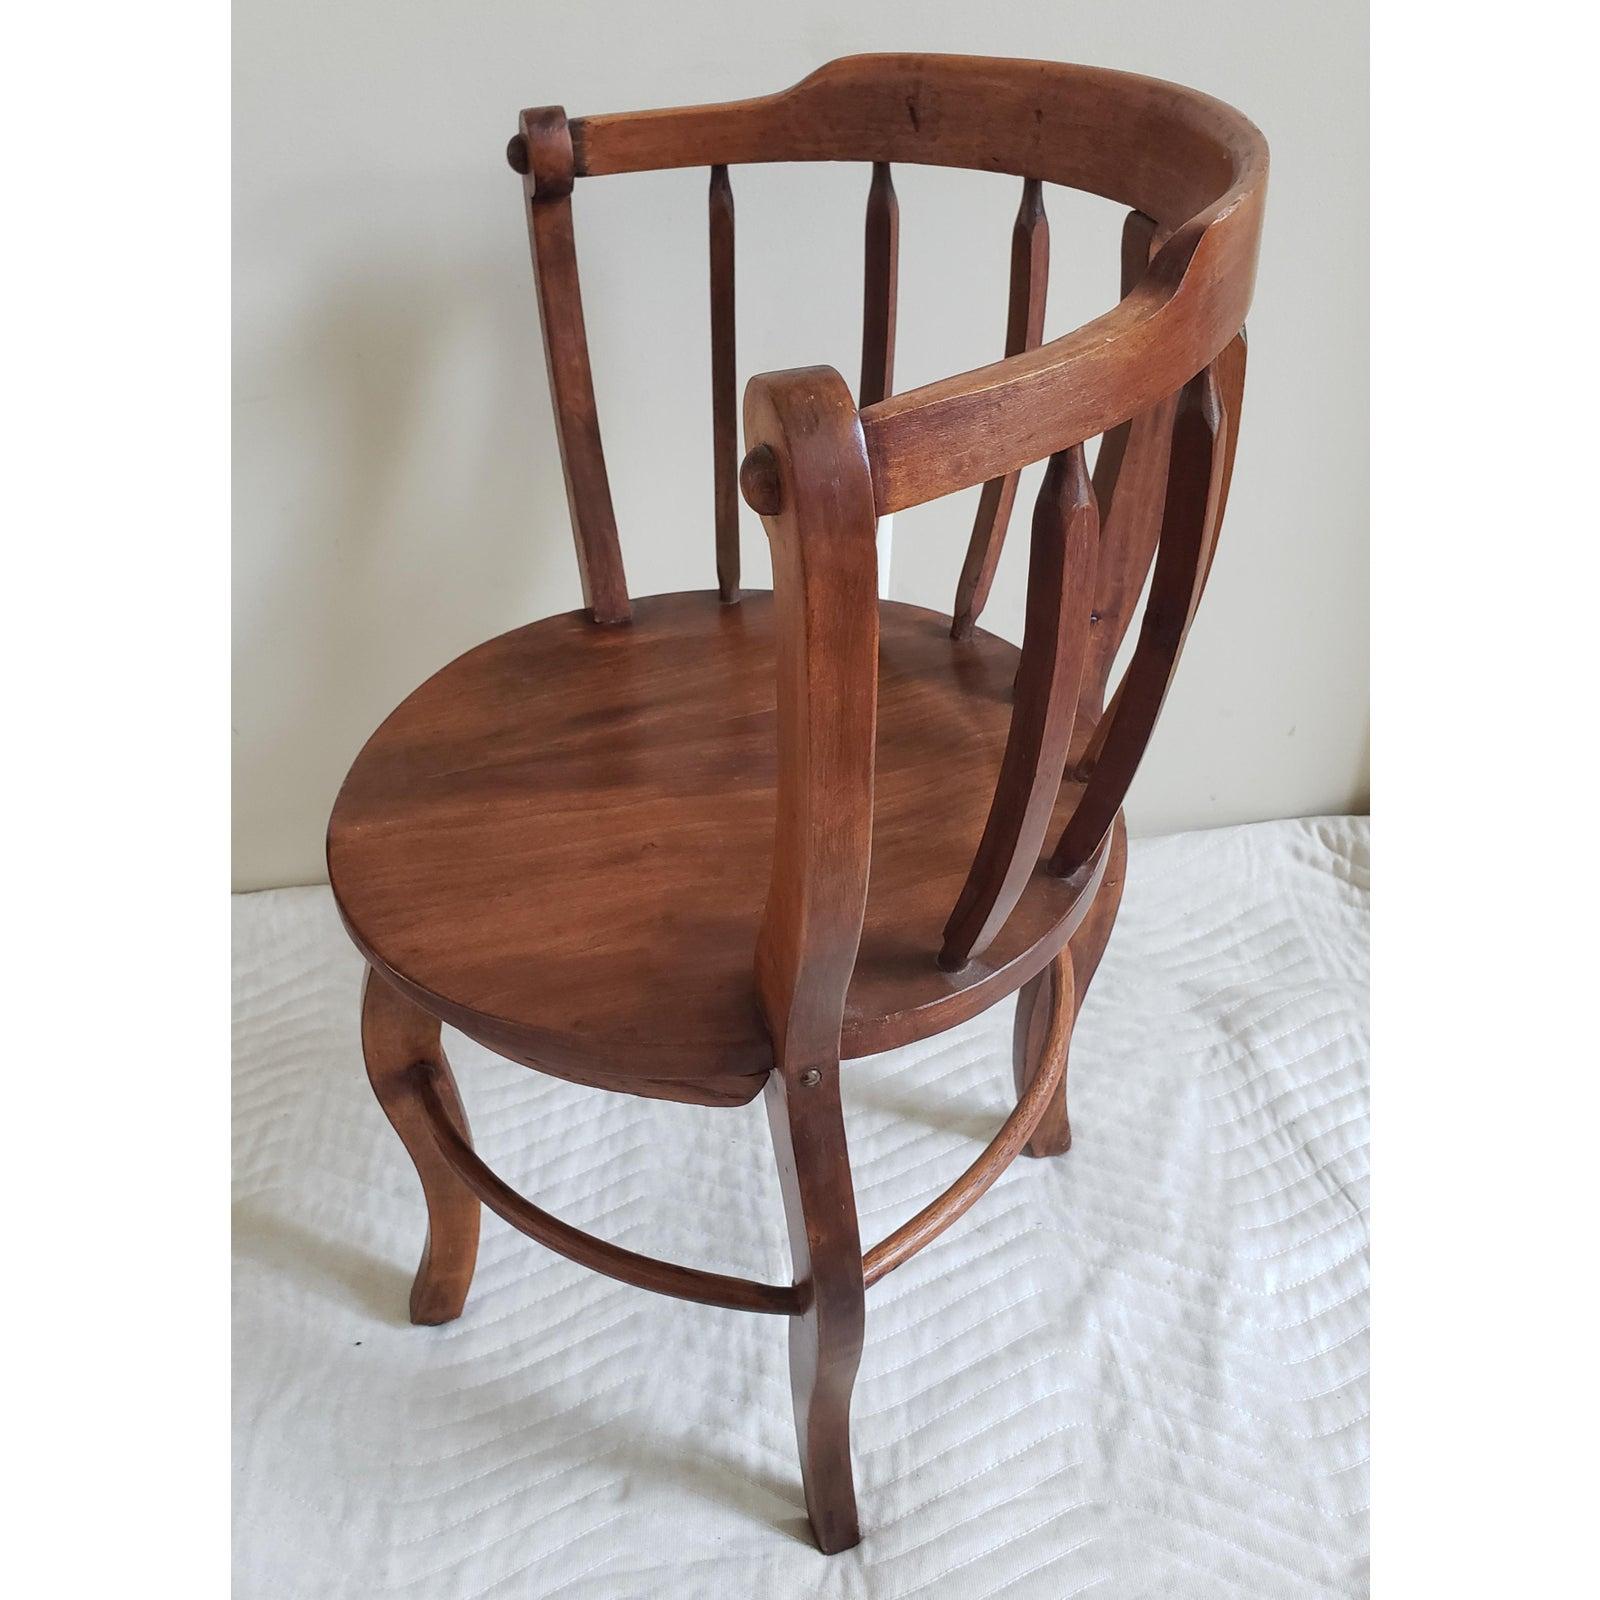 antique round wooden chair